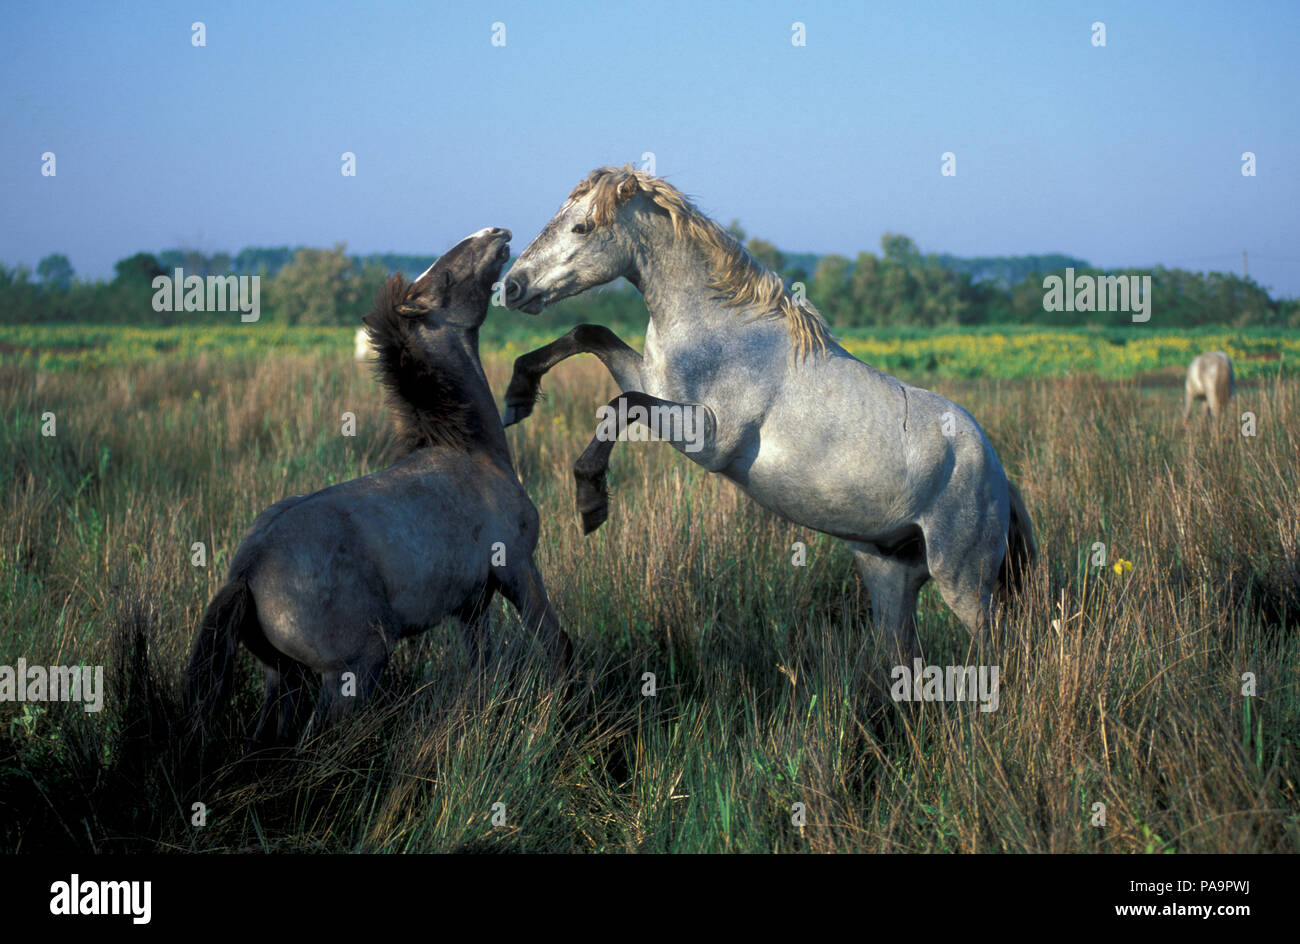 Cheval sauvage de Camargue - Lutte - Poulains - Cheval Camargue - Combat - Equus caballus - Sud de France Banque D'Images